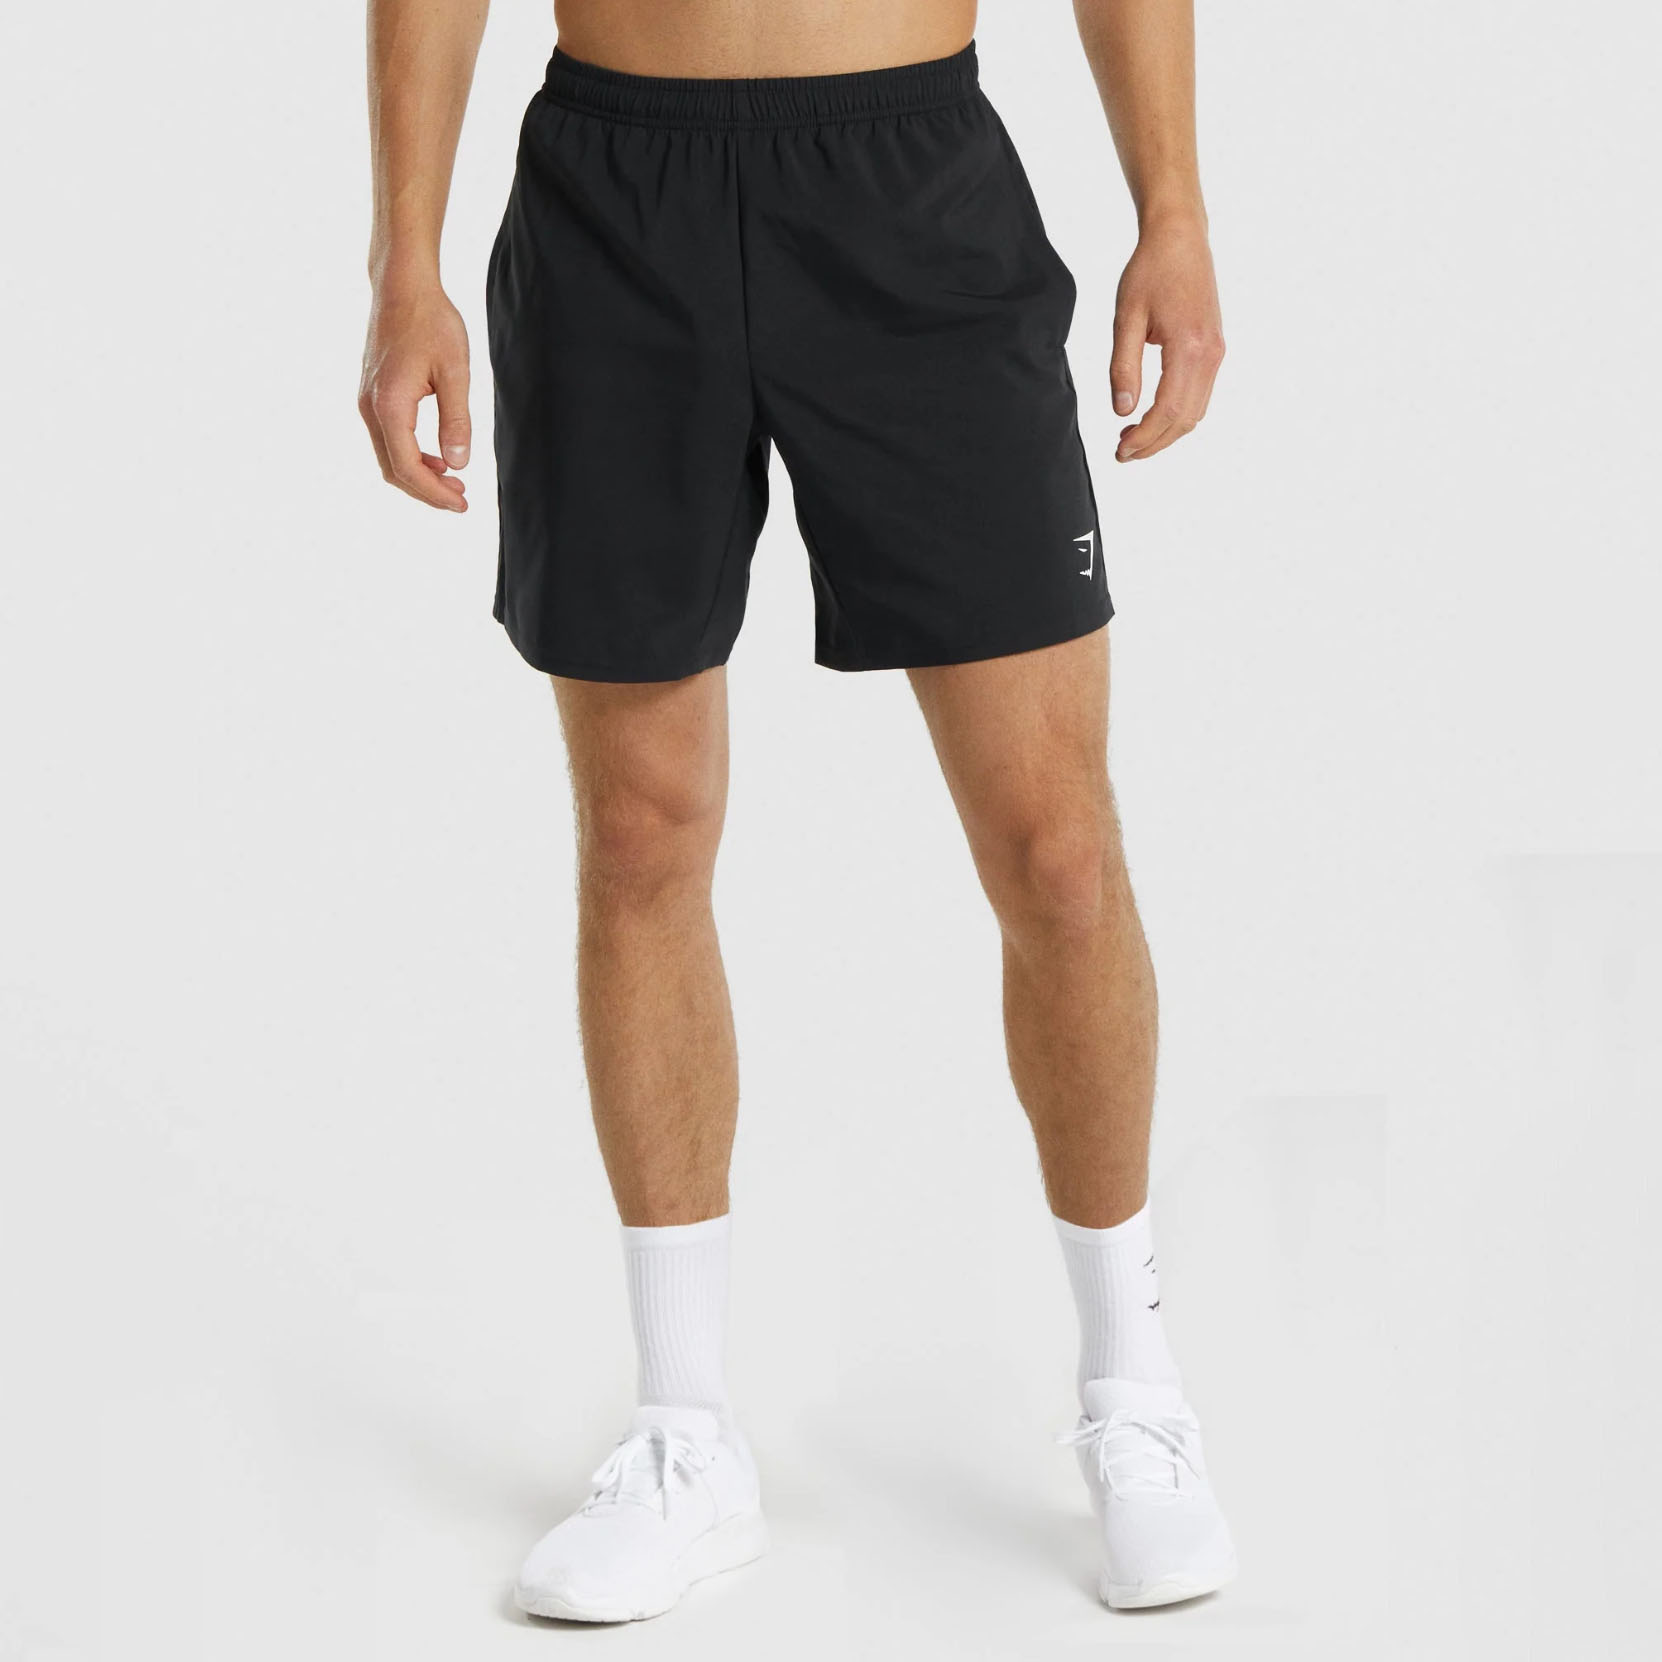 Shirtless man wearing black Gymshark shorts